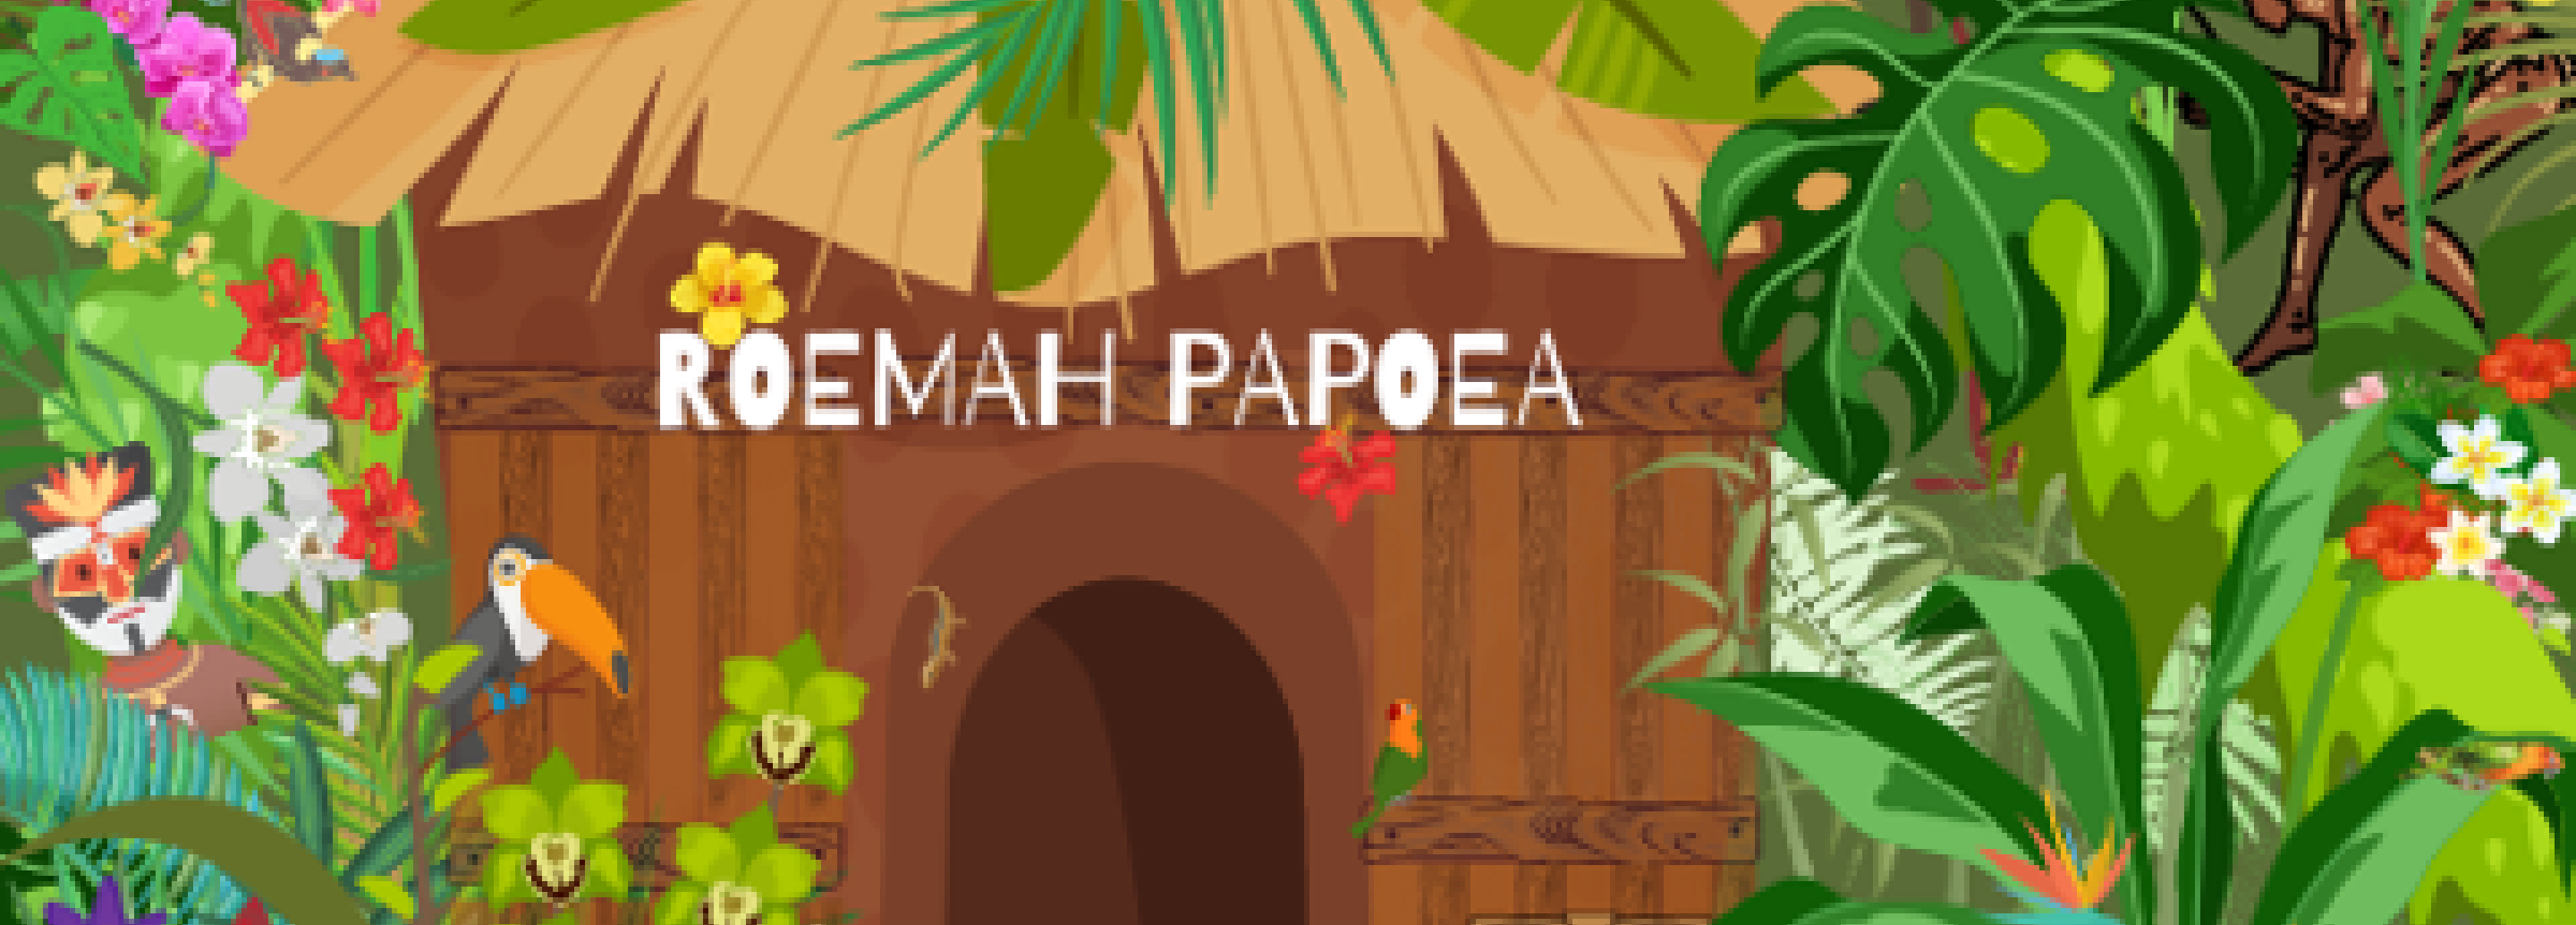 Roemah Papoea #3 | Klanken van (h)erkenning + pre-event